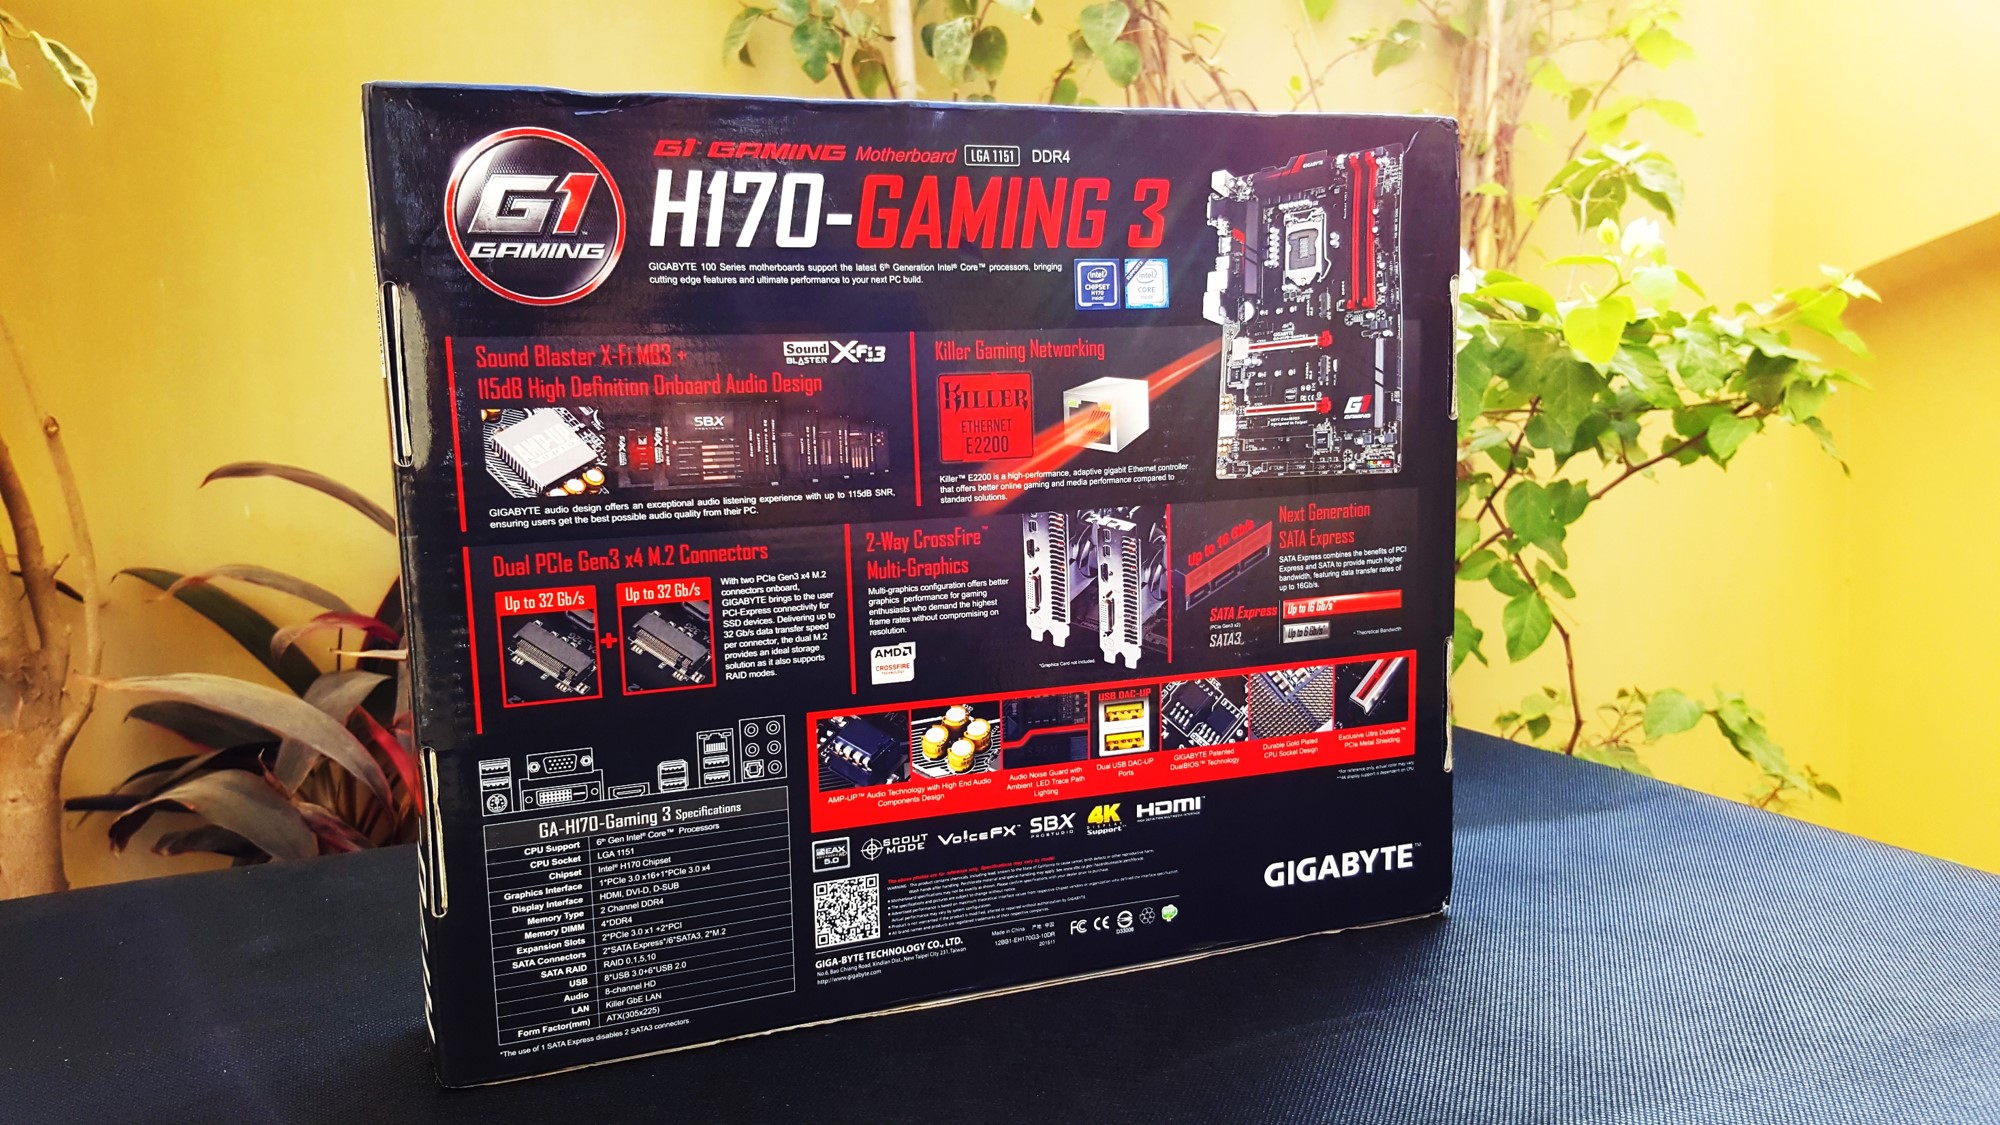 5-Gigabyte H170-Gaming 3 Box Back